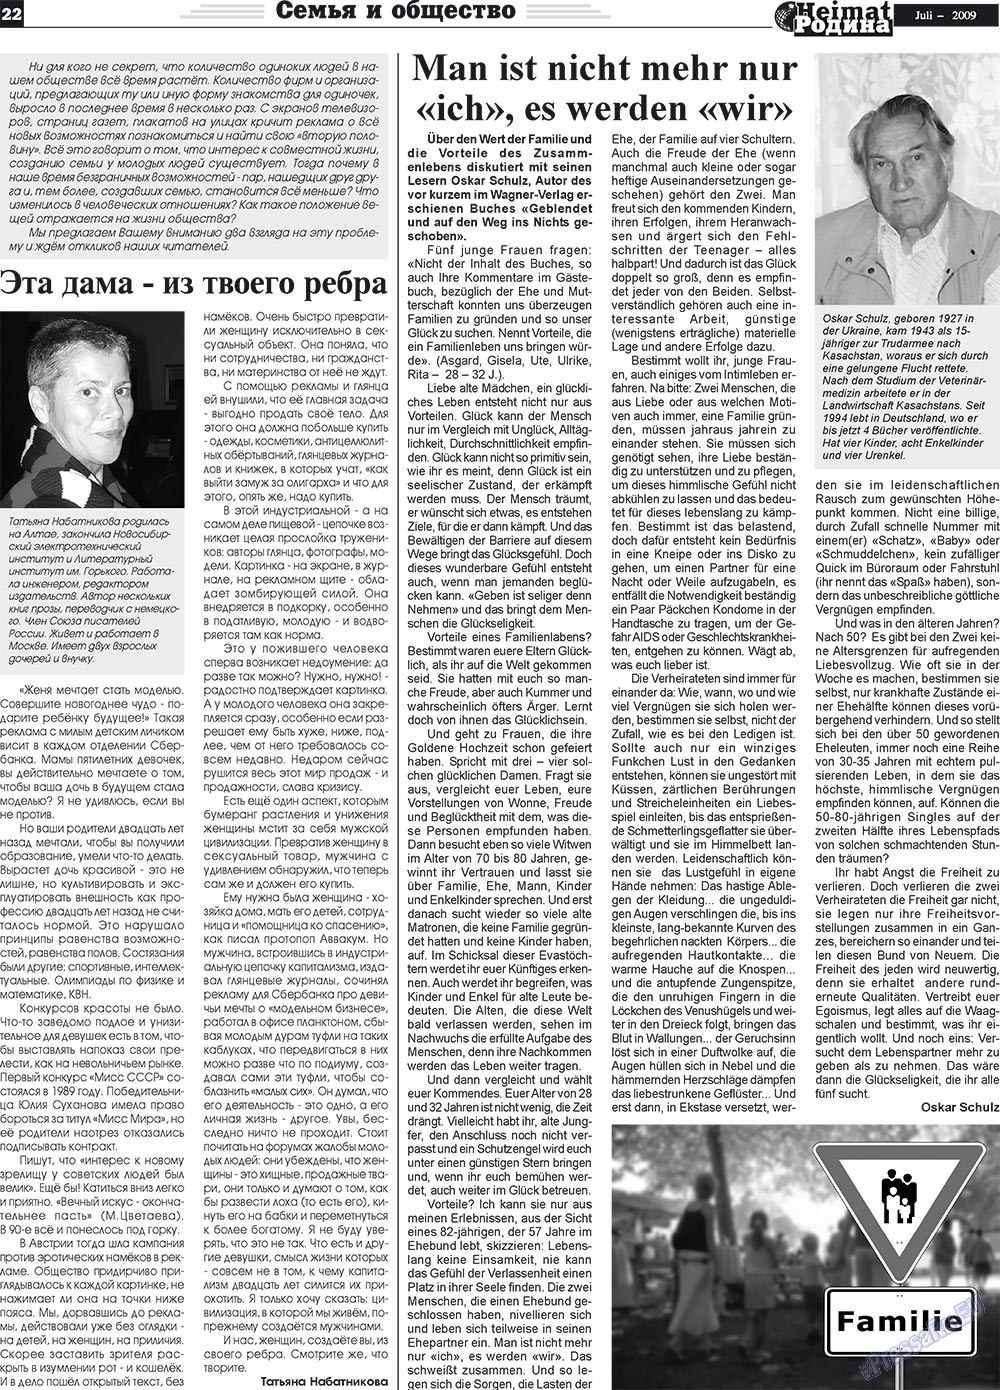 Heimat-Родина (газета). 2009 год, номер 7, стр. 22